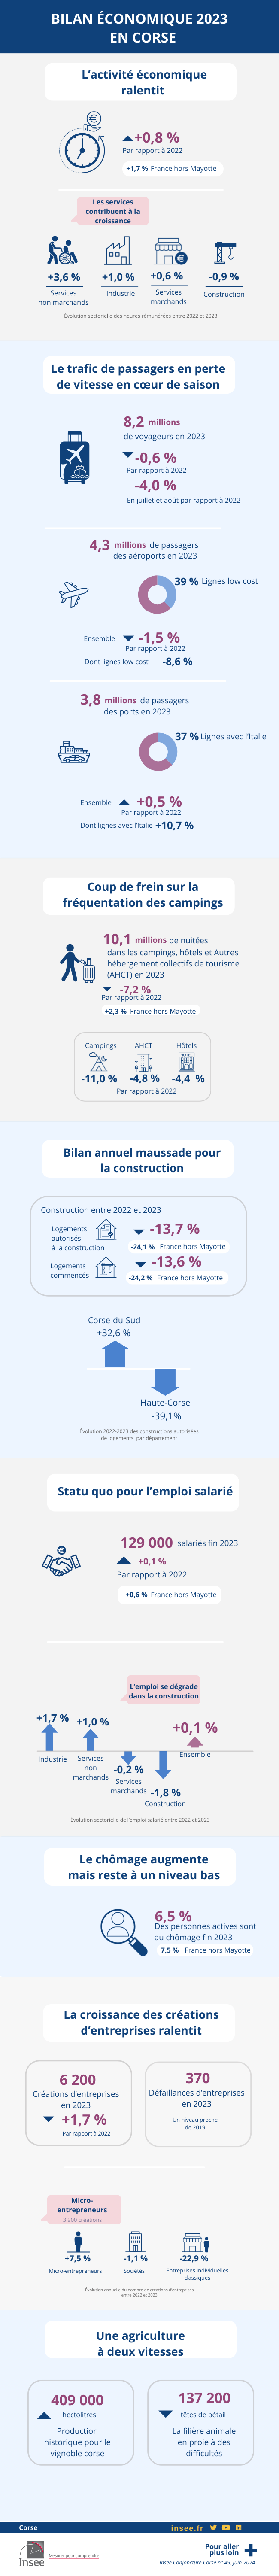 Bilan économique 2023 Corse